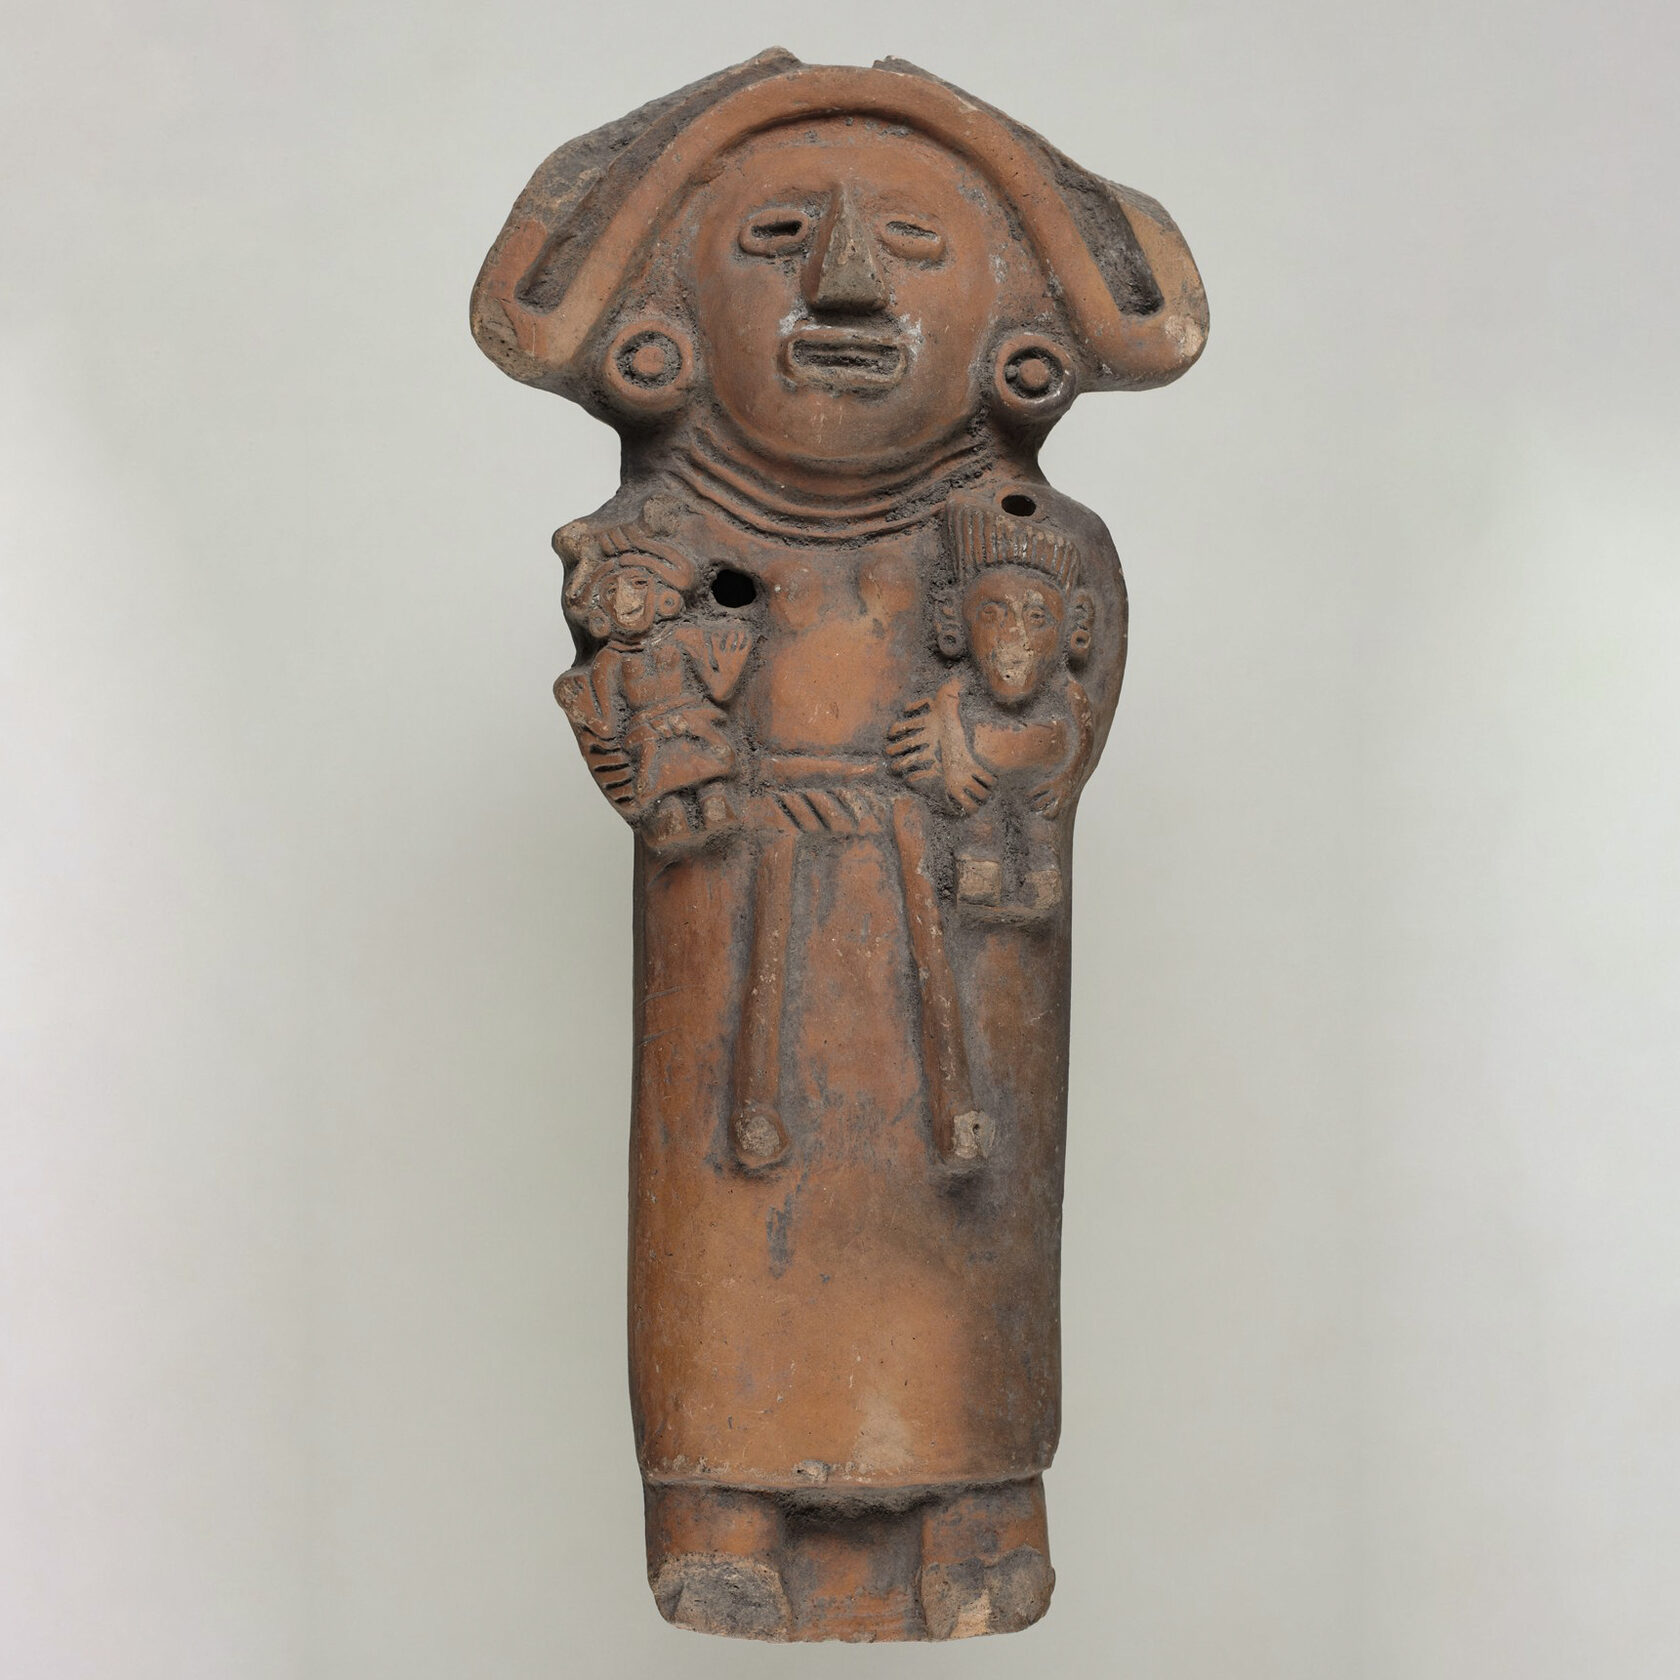 Погремушка в виде богини Сиукоатль. Ацтеки, 15 век. Коллекция Princeton University Art Museum.